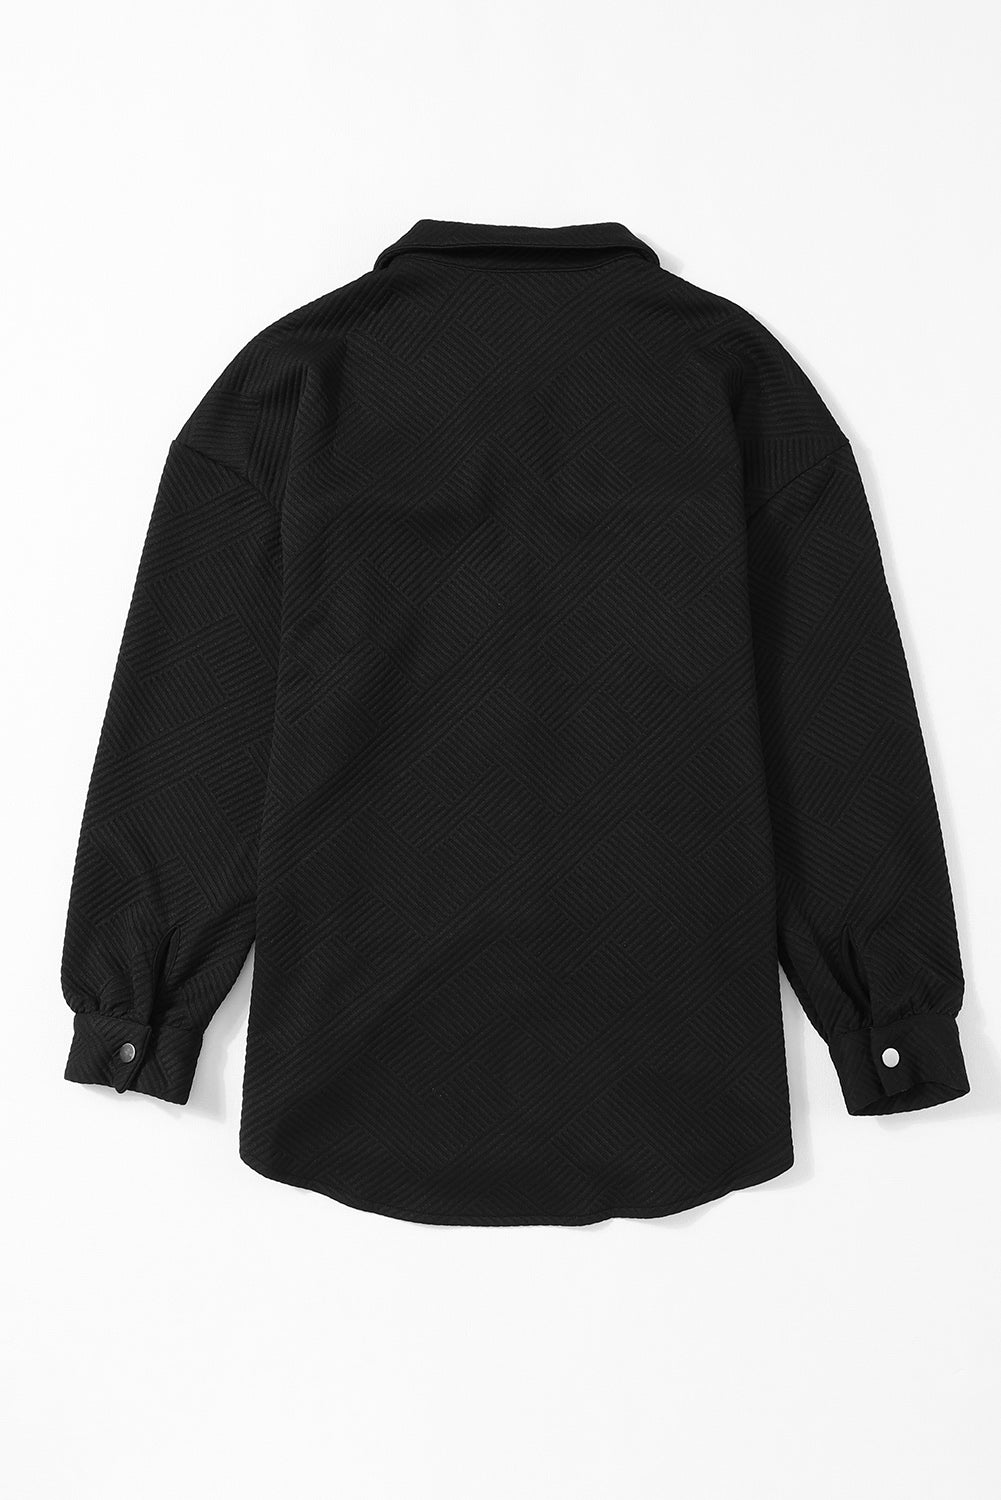 Crna jednobojna jakna s preklopnim džepom i kopčanjem